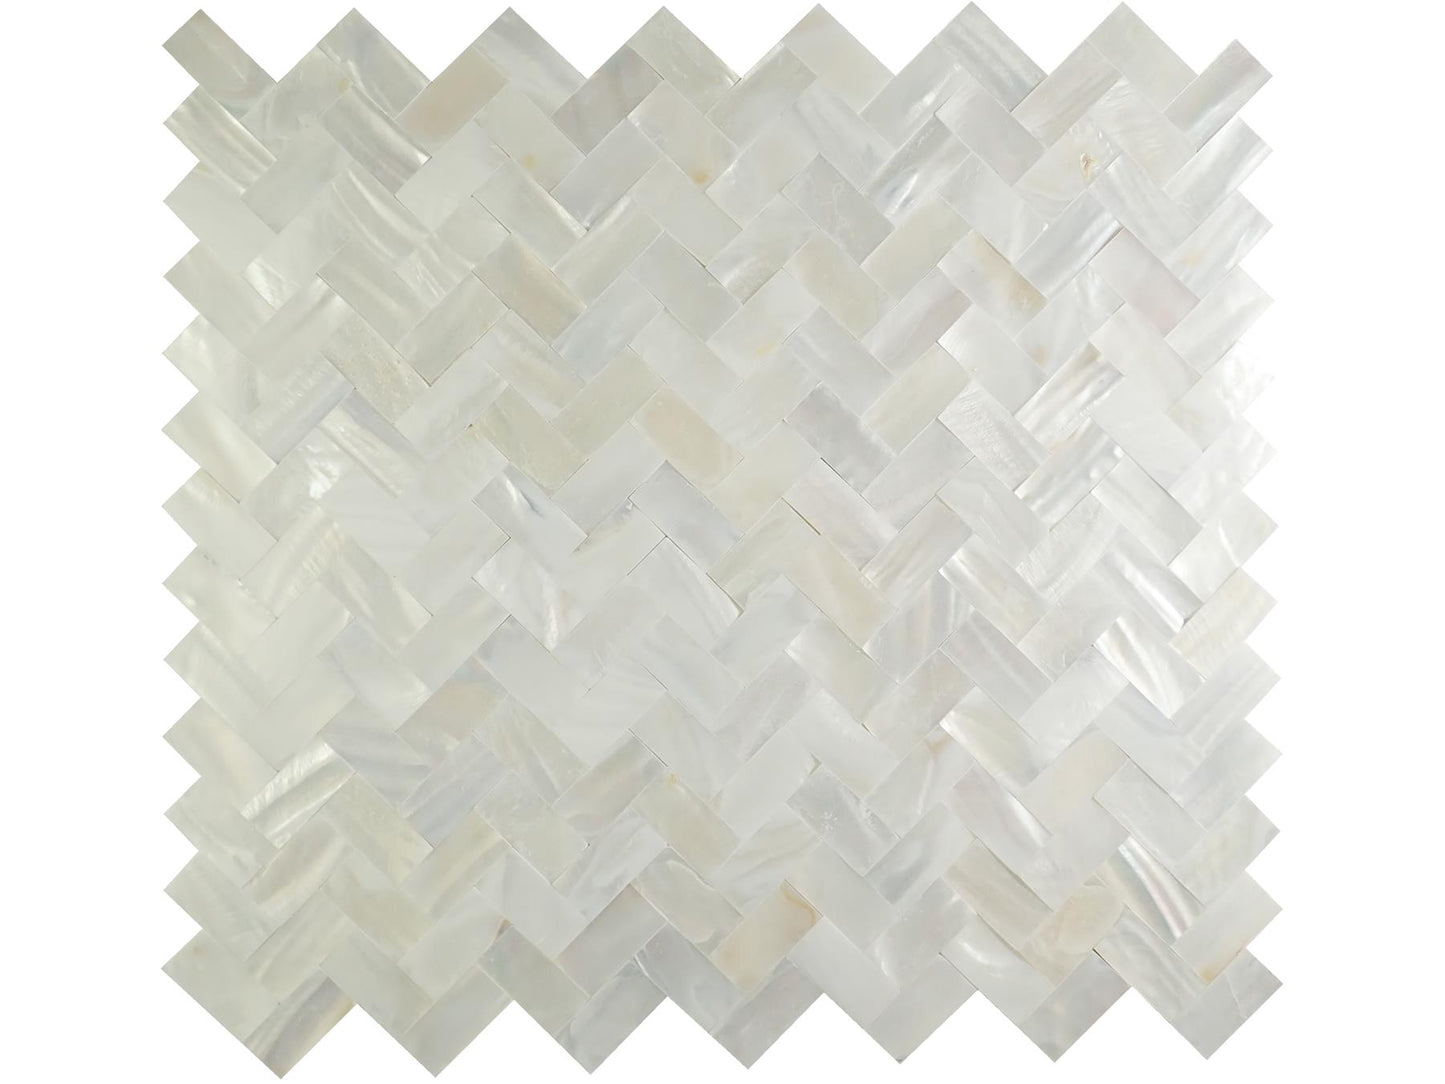 Incudo White Gapless Herringbone Mosaic Mother of Pearl Tile - 278x300x2mm (10.9x11.81x0.08")